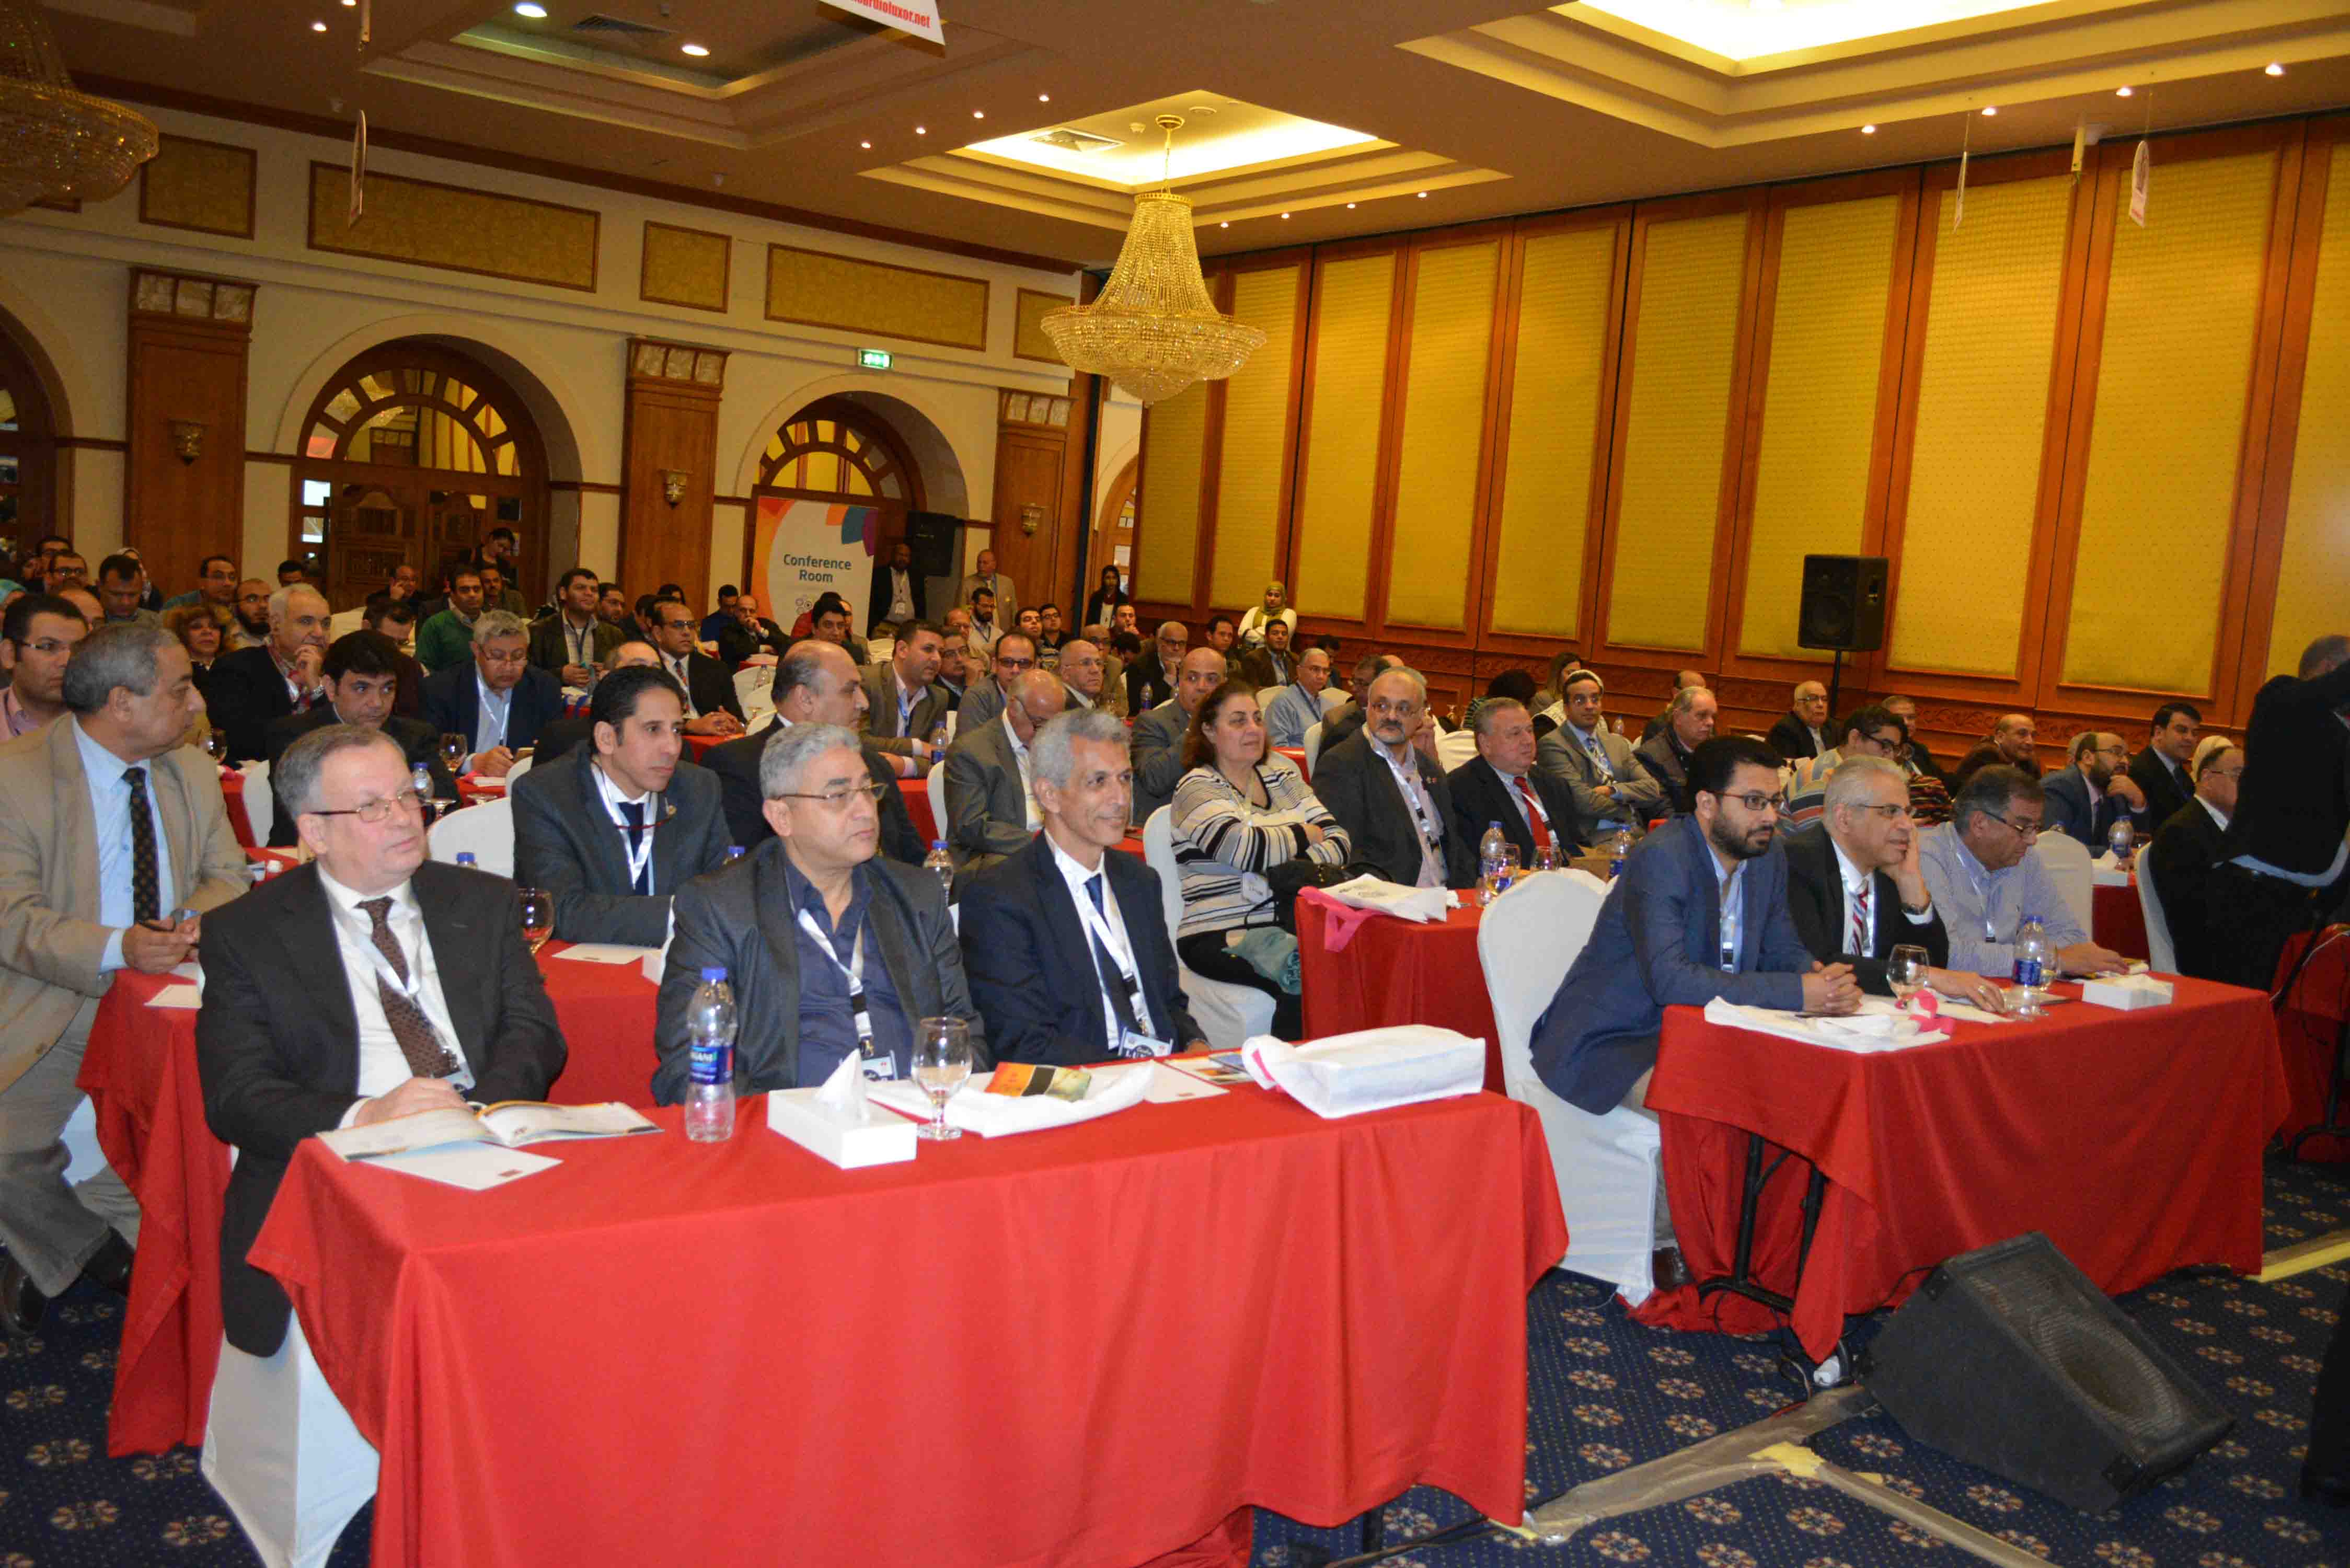 2- أكثر من 500 طبيب مصري وأفريقي وإيطالي بالمؤتمر